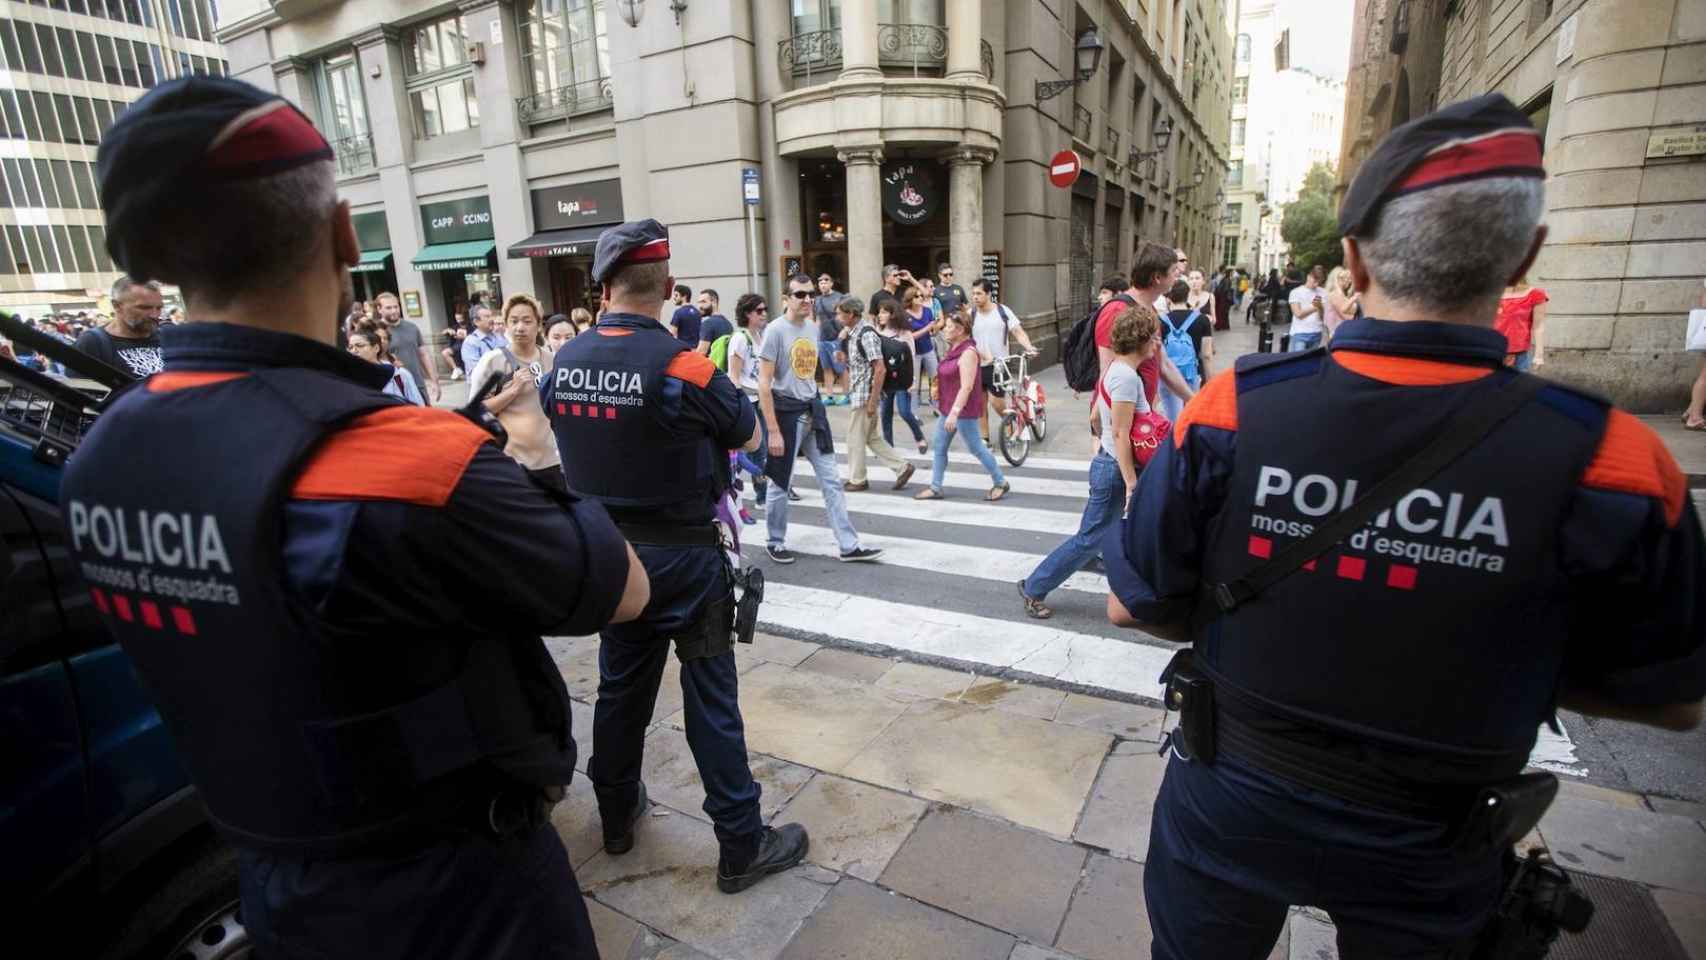 Consejo de Europa pide a Generalitat eliminar "fijación" de presos "con correas" en camas